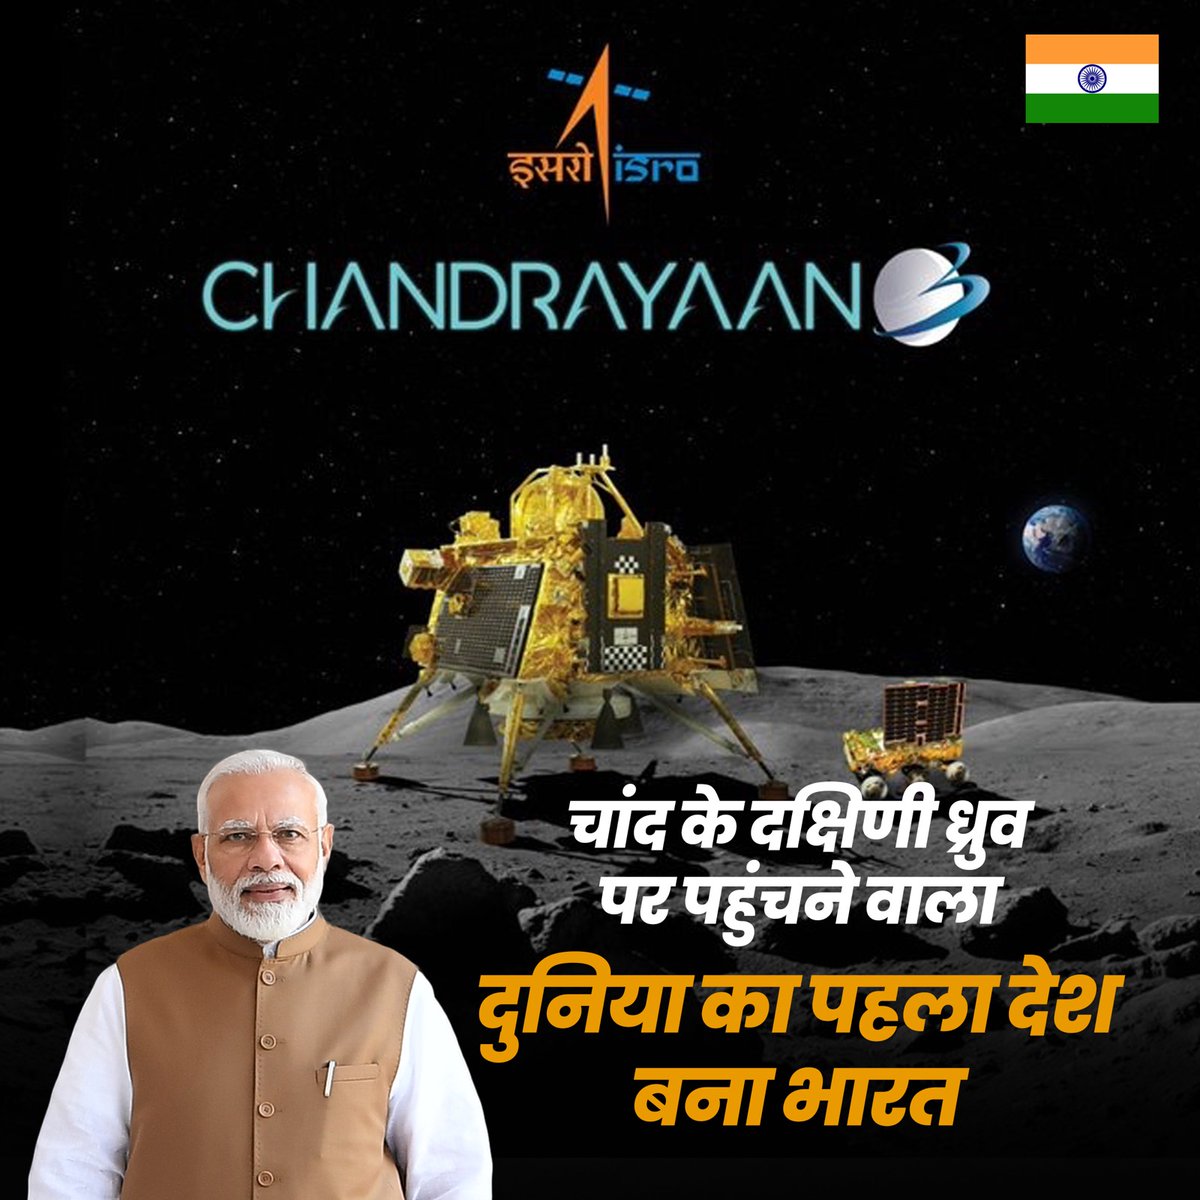 भारत बना चंद्रमा के दक्षिणी ध्रुव पर पहुंचने वाला दुनिया का पहला देश।

#IndiaOnTheMoon